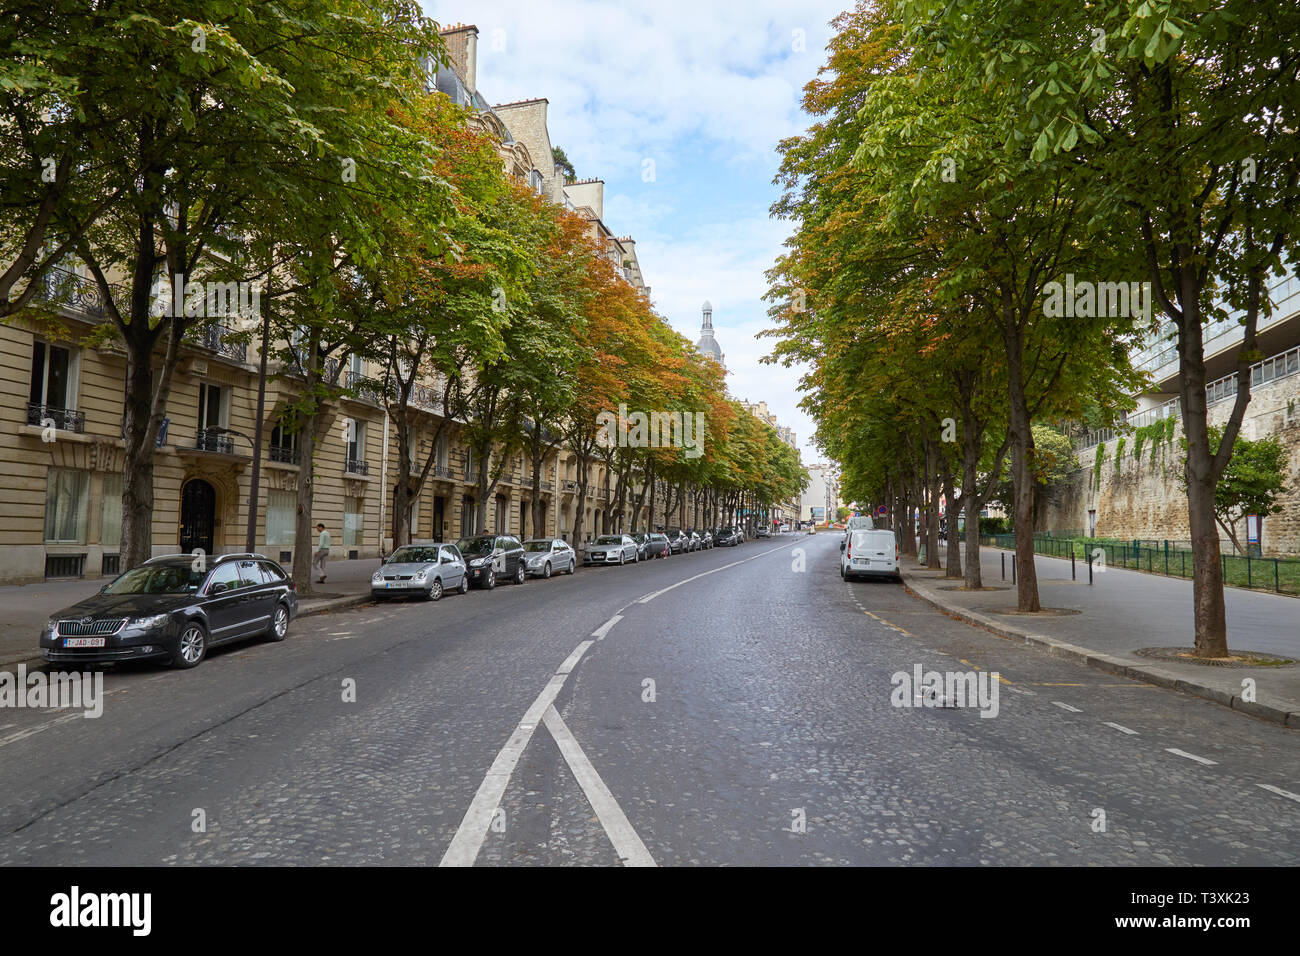 París, Francia - 23 de julio de 2017: Calle vacía con árboles y el coche aparcado en verano en Paris, Francia Foto de stock